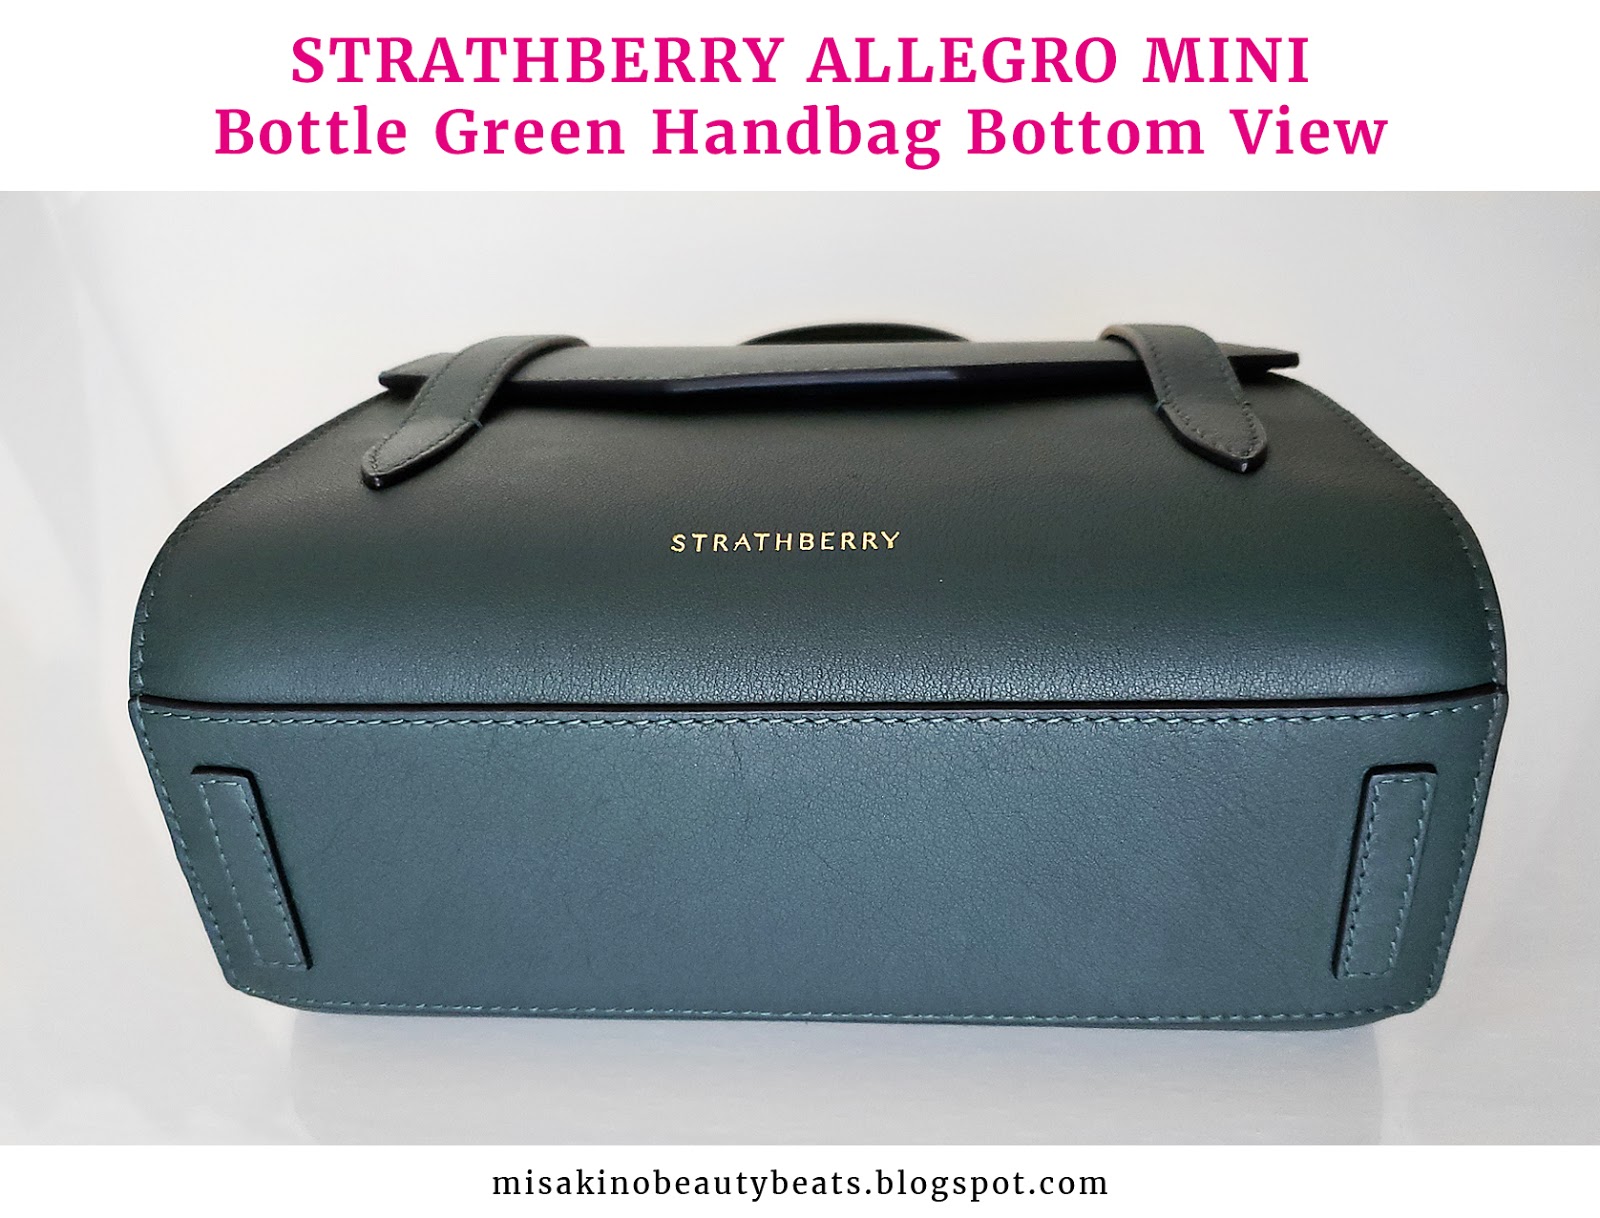 Review: Strathberry Allegro Mini (Monnier Freres) - MISAKINO